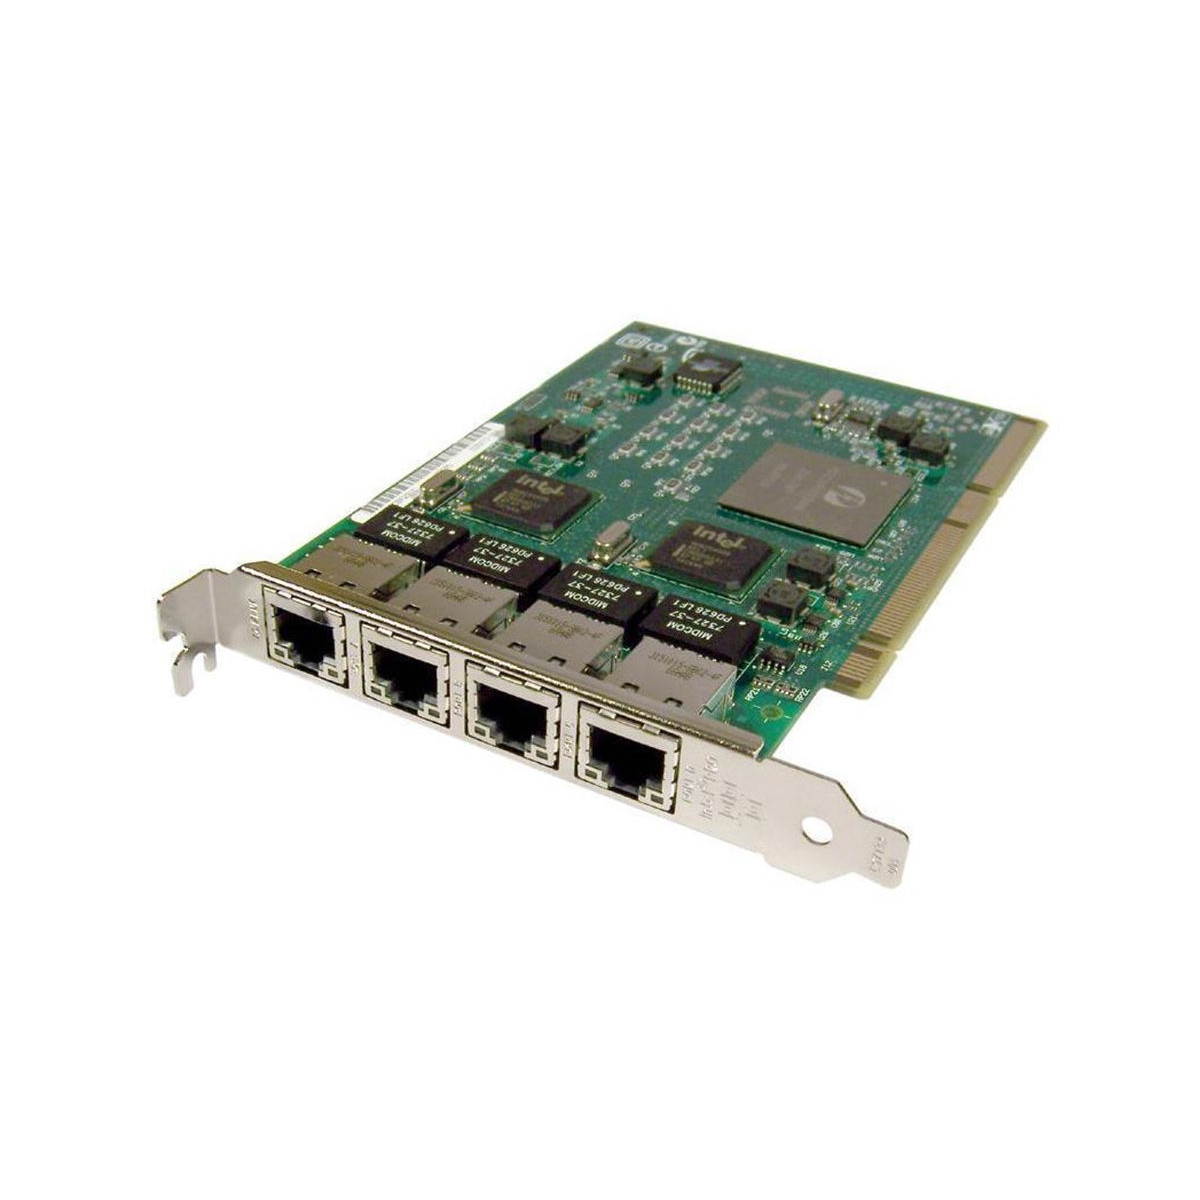 KARTA INTEL PRO 1000GT 4x1GB PCI-x PWLA8494GT